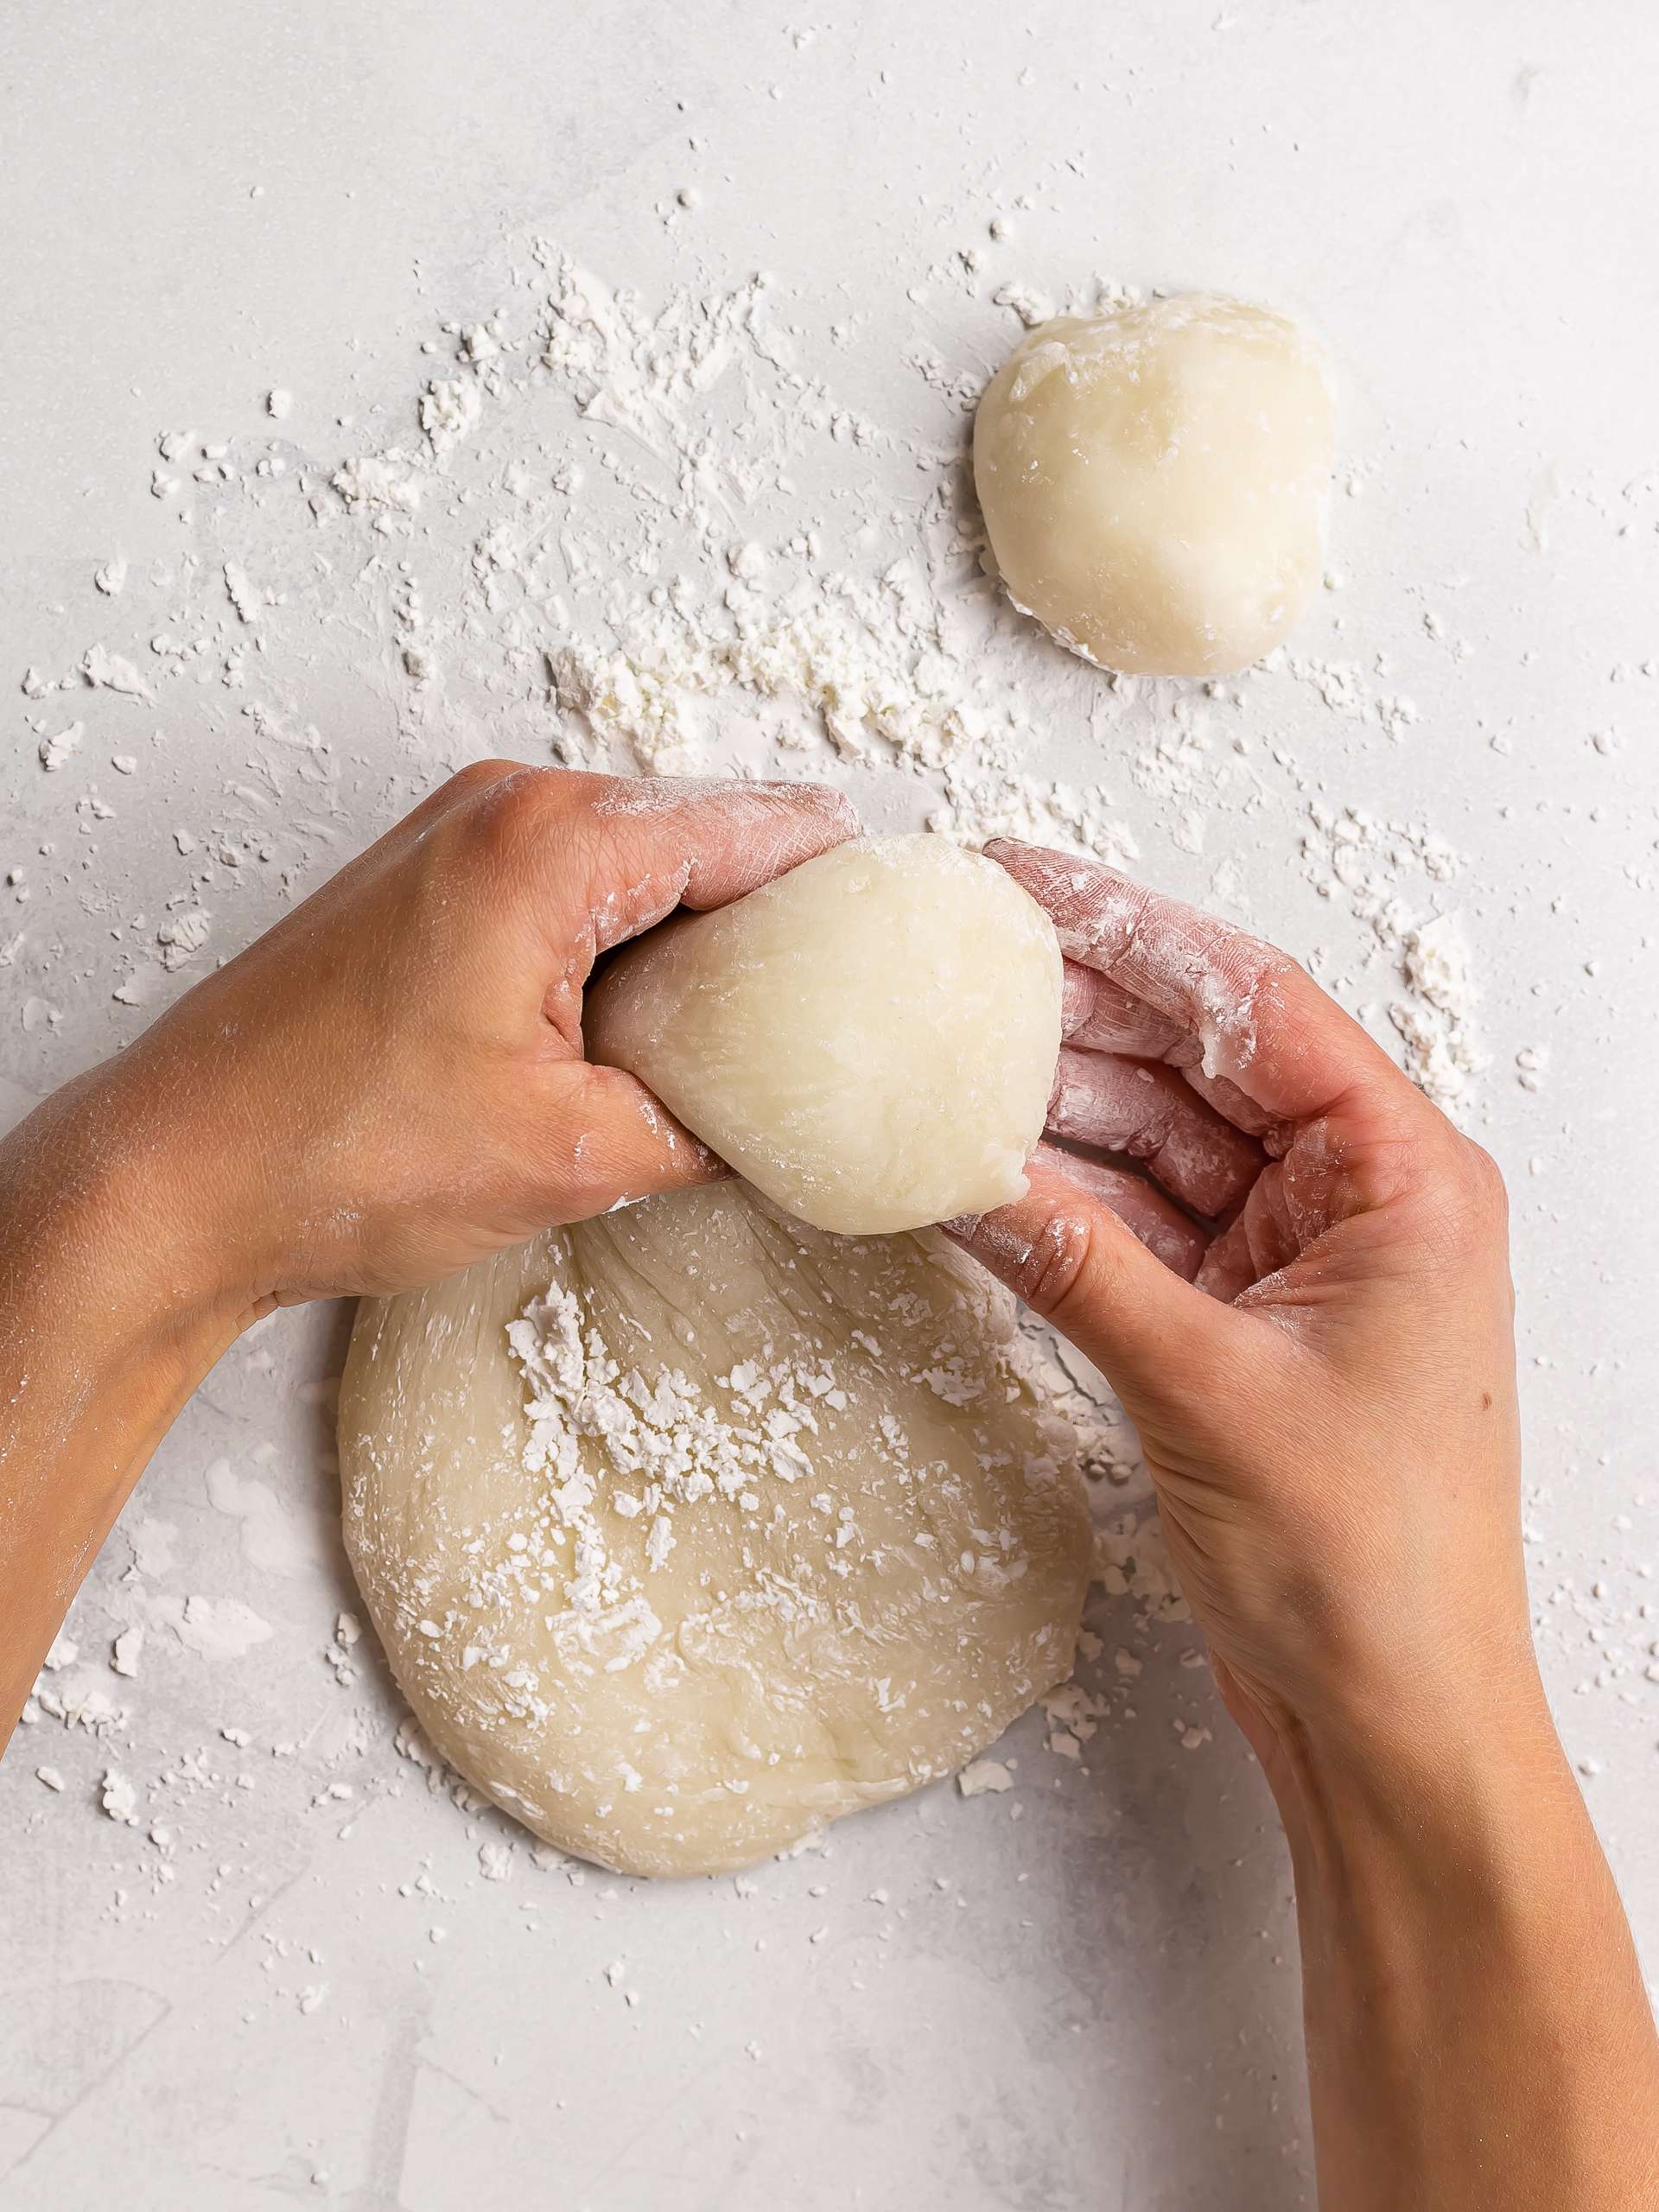 mochi dough balls